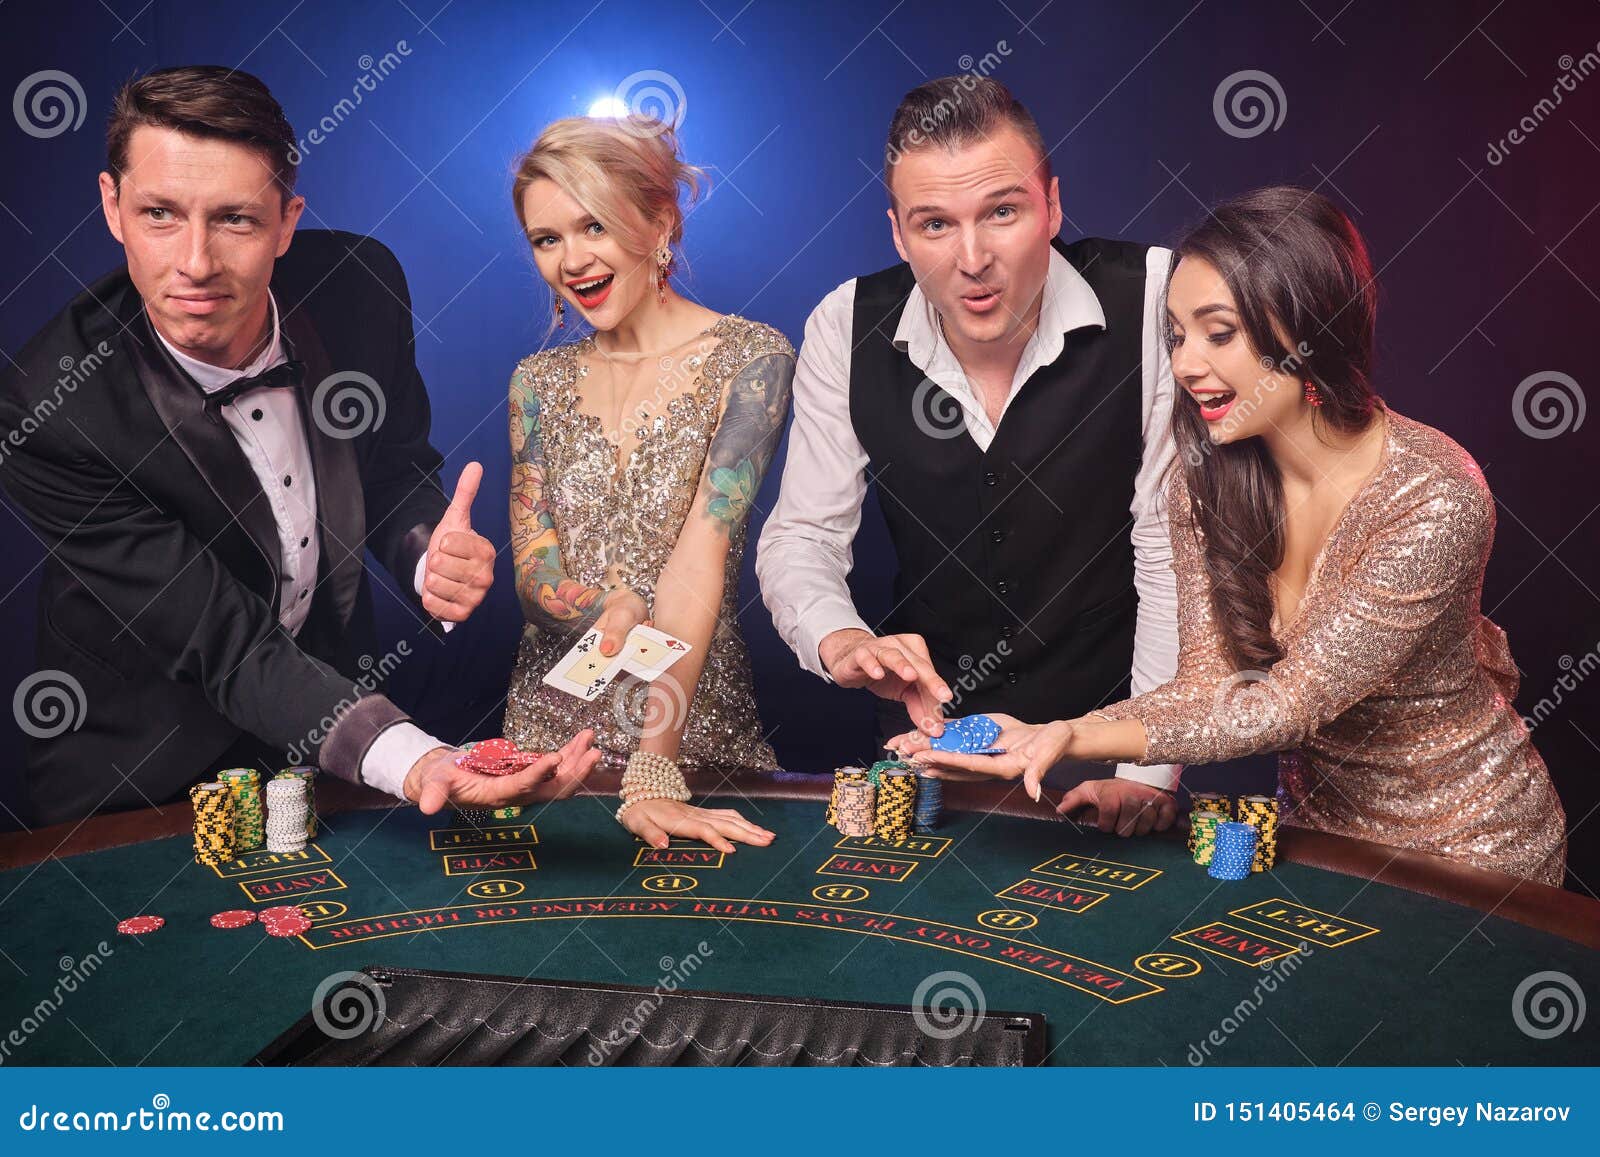 MidnightWins Casino review Resources: google.com